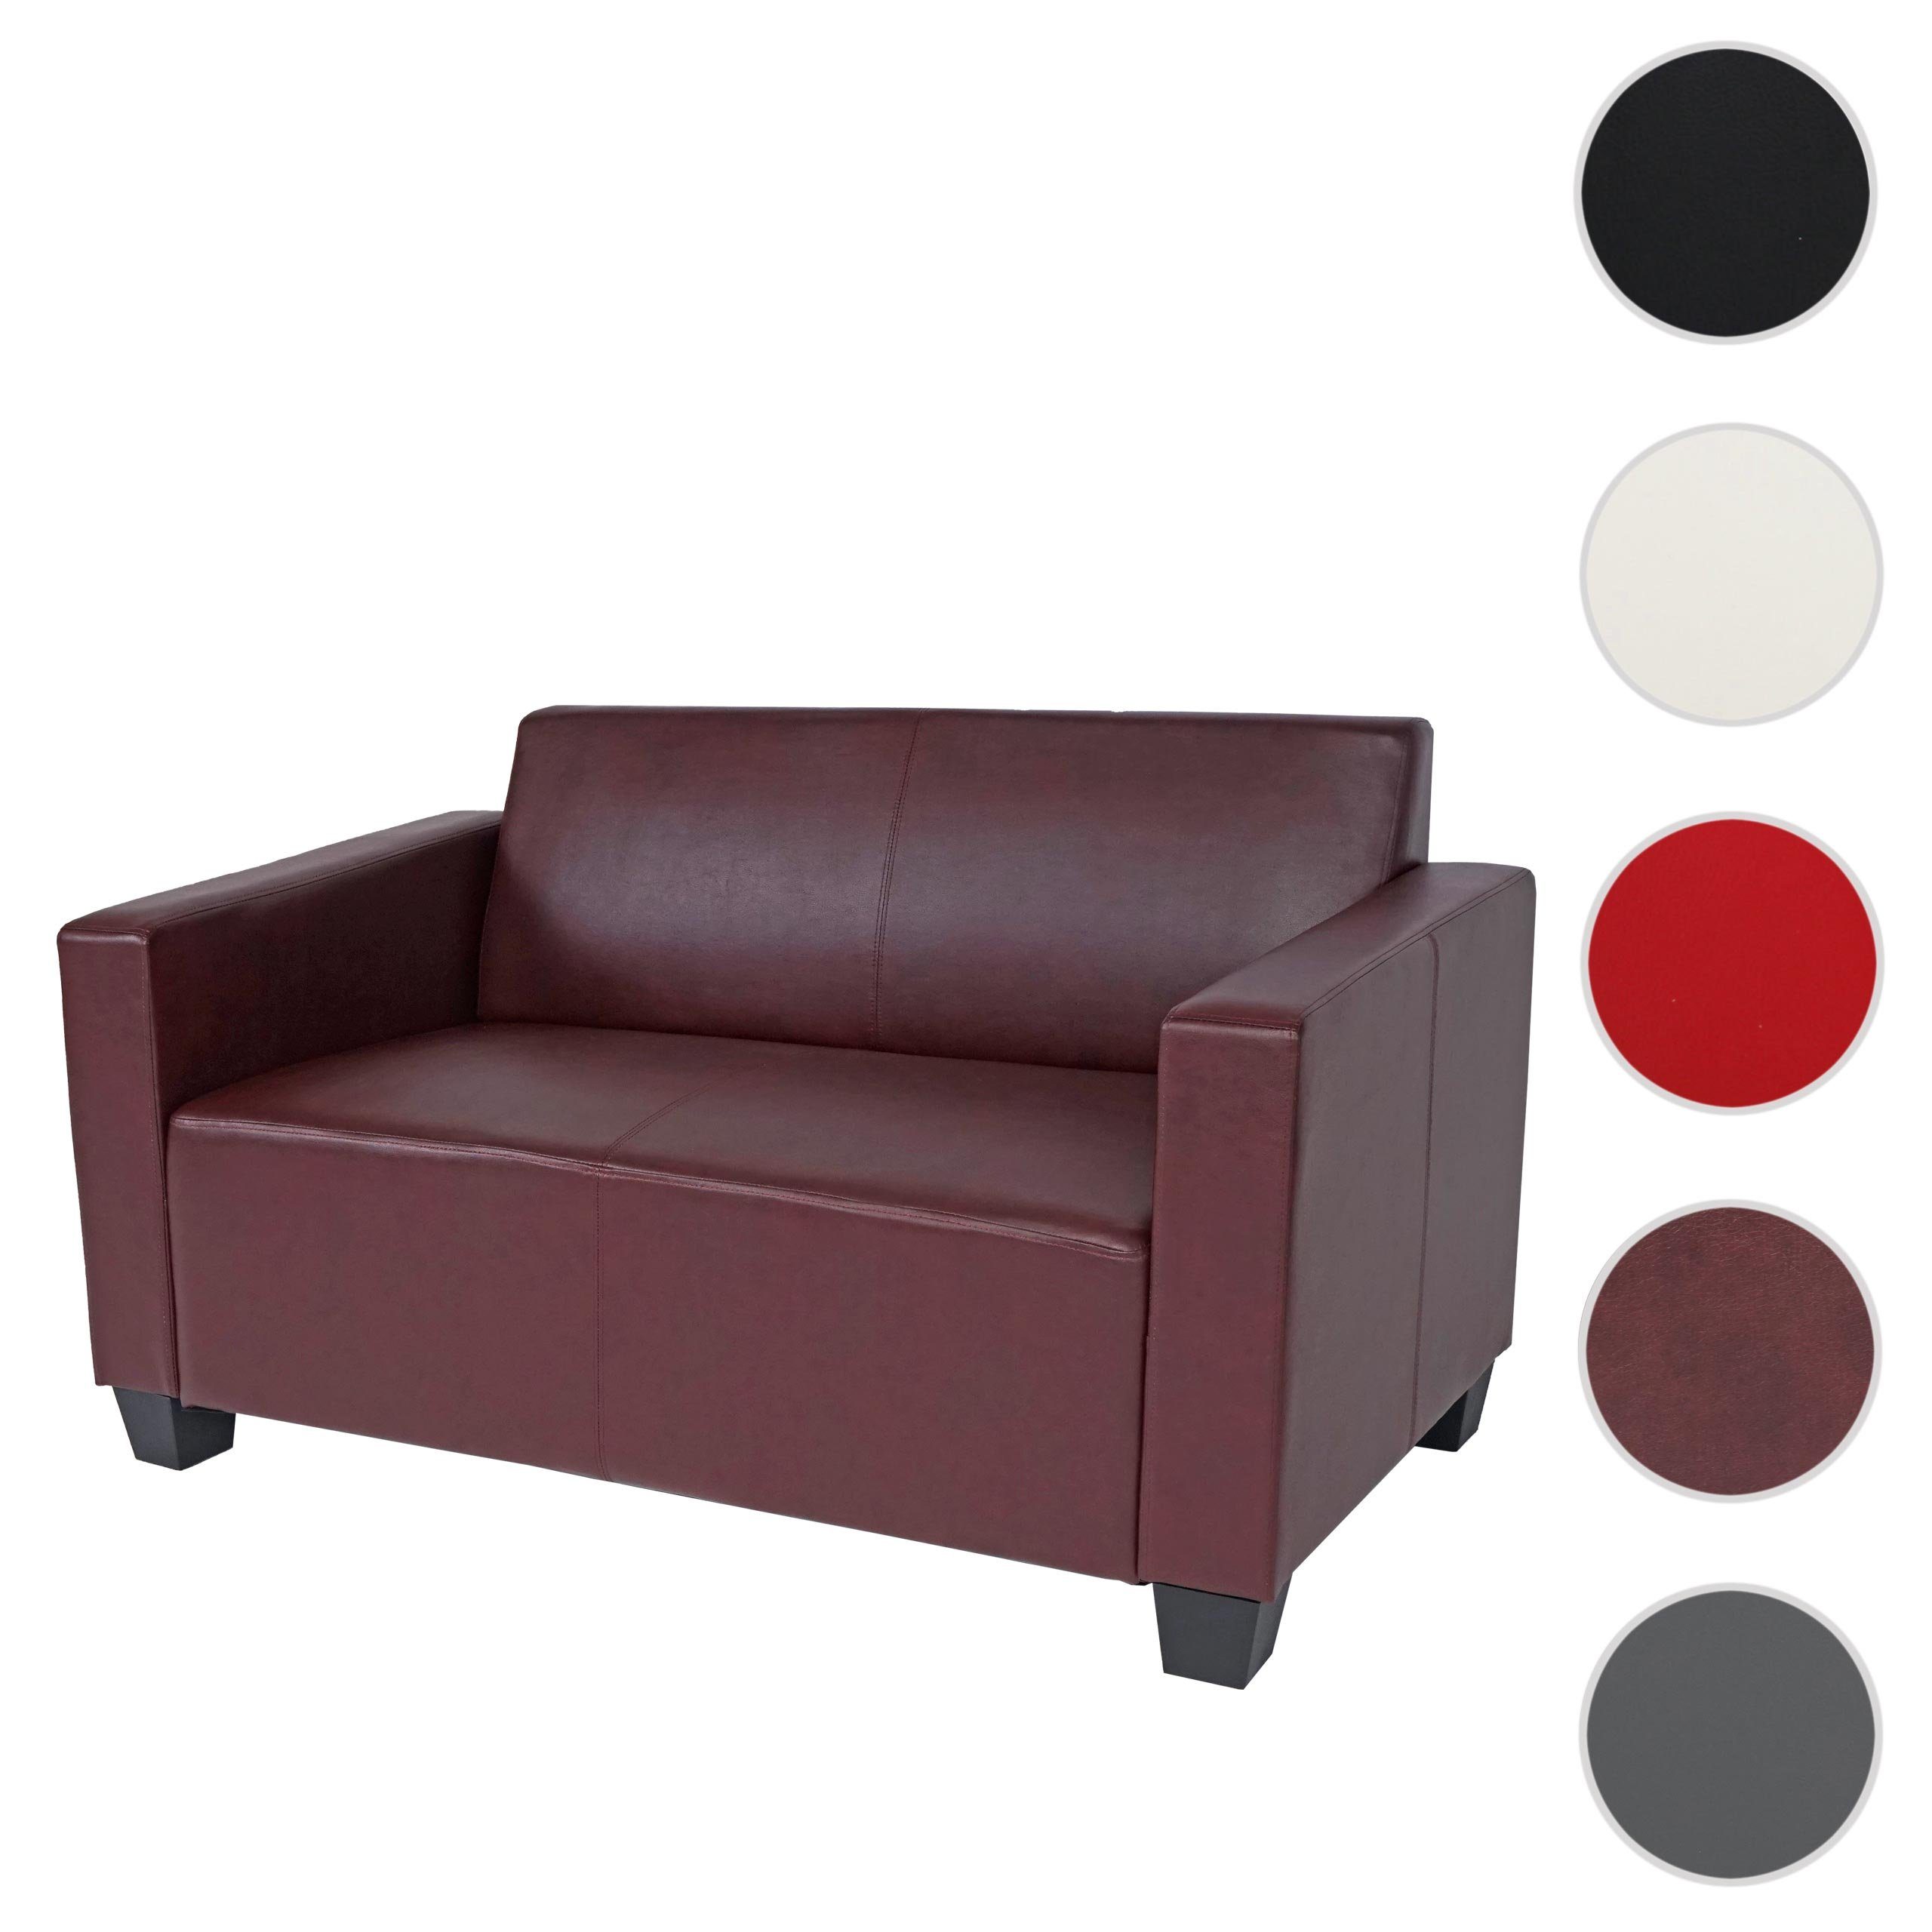 Moncalieri-So, rot-braun Elementen der Sofa MCW rot-braun mit Lyon-Serie Polsterung, Erweiterbar Set, weiteren | bequeme